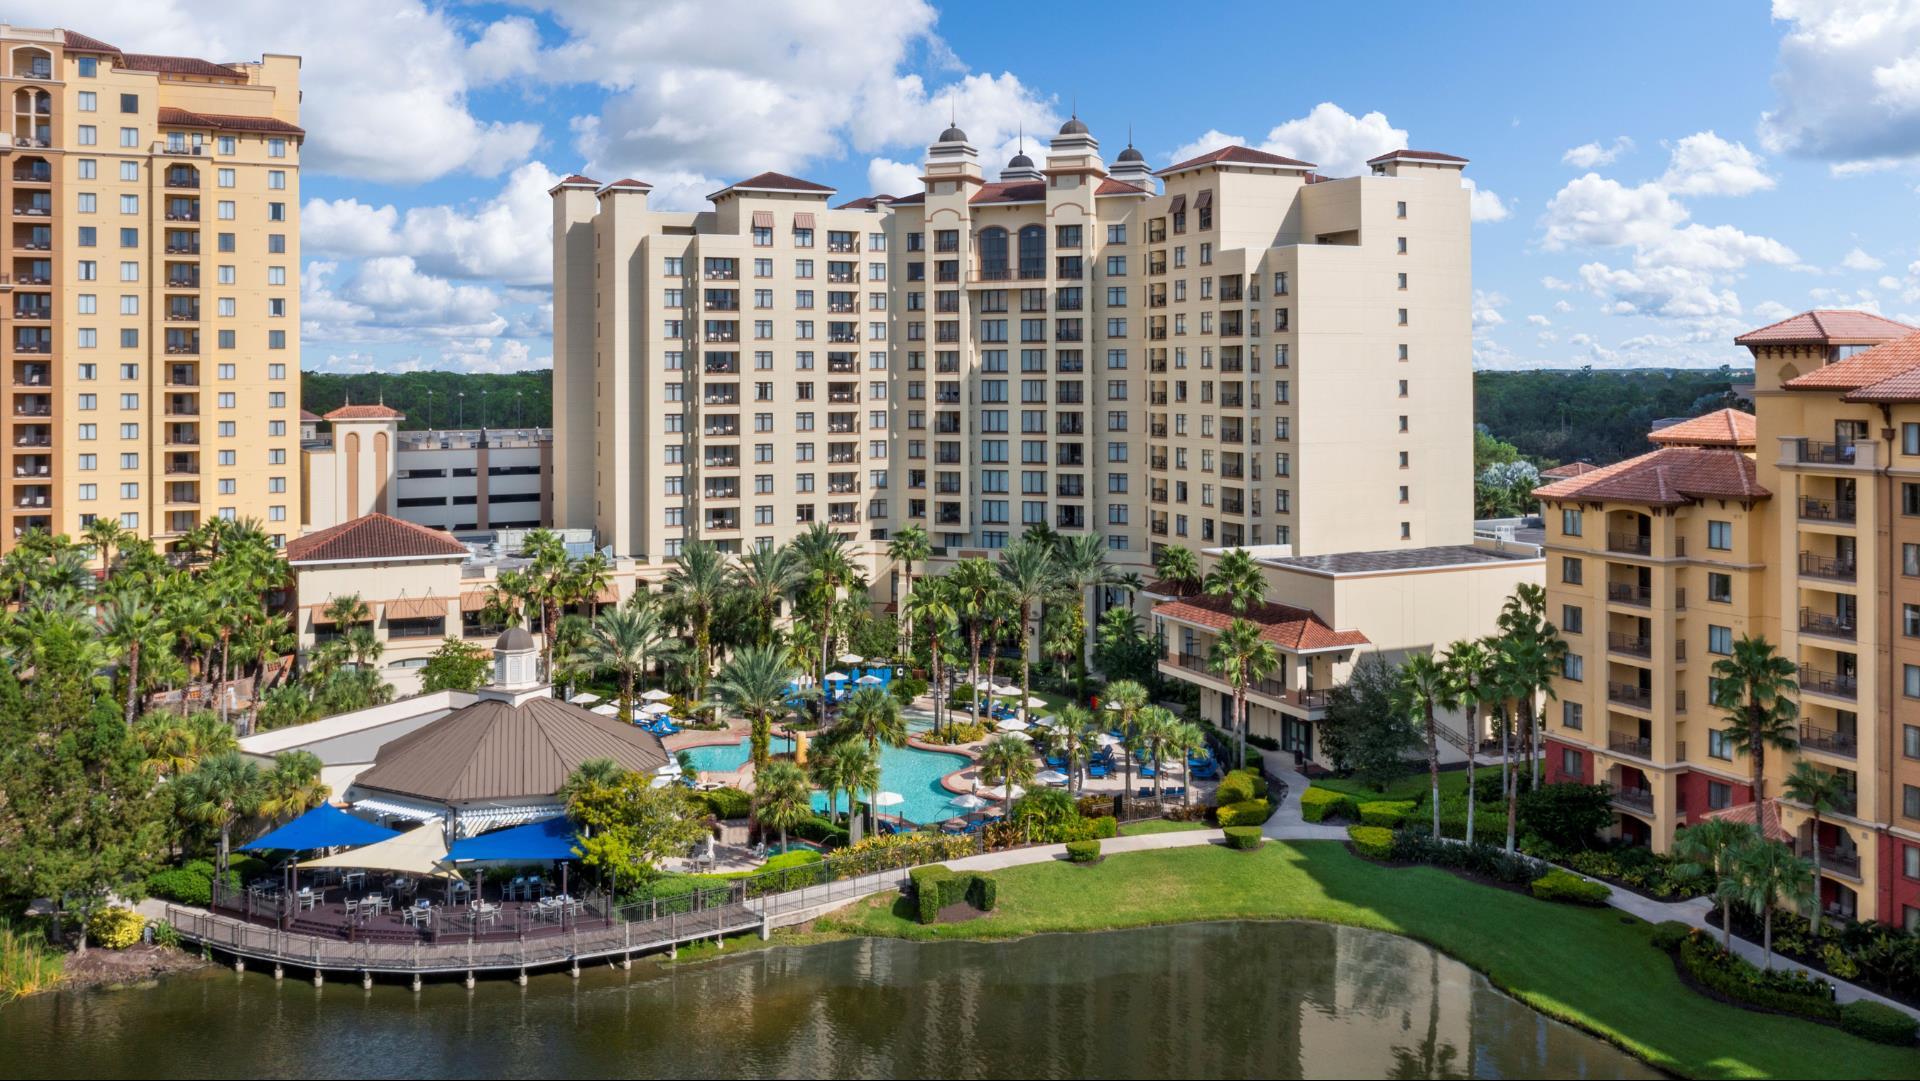 Wyndham Grand Orlando Resort Bonnet Creek, a Wyndham Meetings Collection Hotel in Orlando, FL